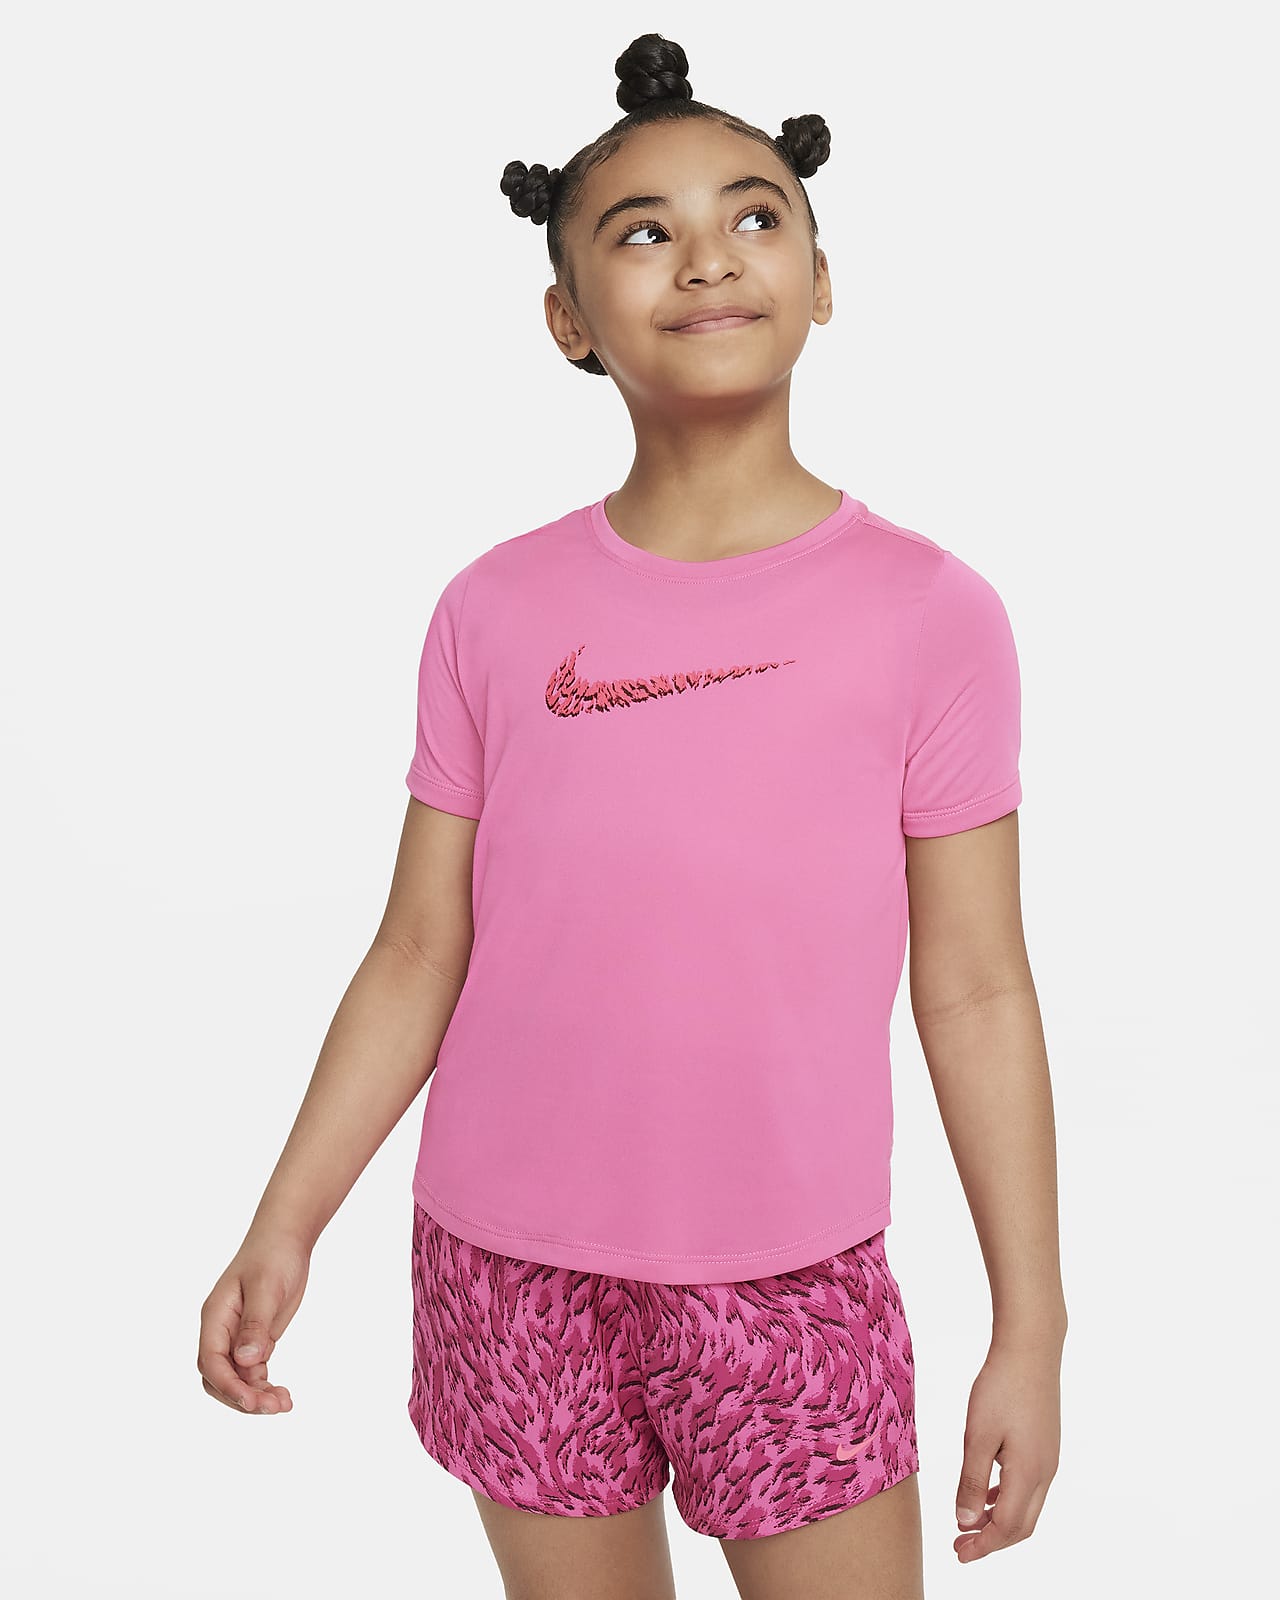 Nike One Kurzarm-Trainingsoberteil für ältere Kinder (Mädchen)